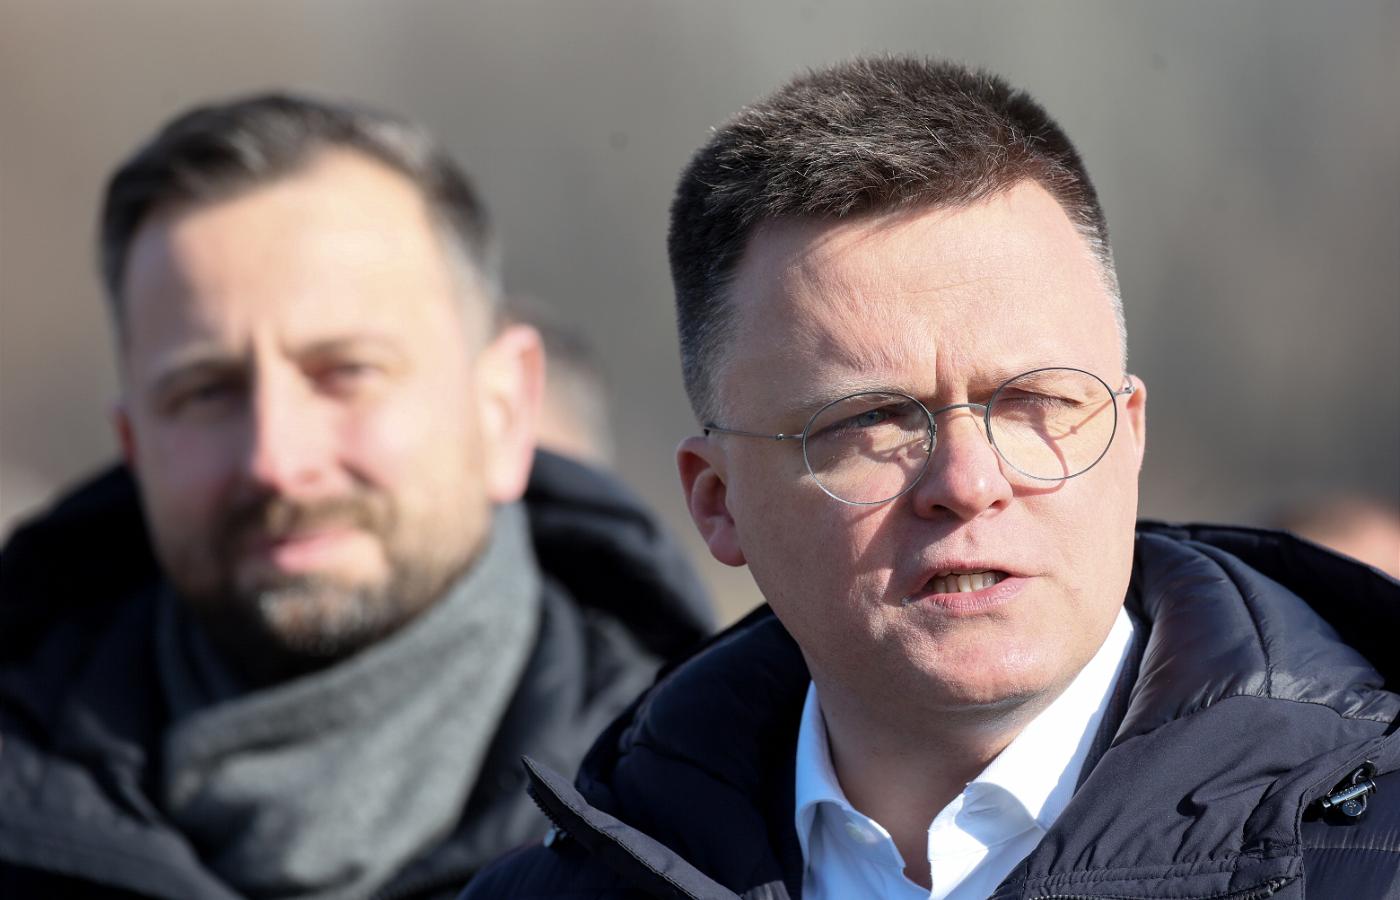 Szymon Hołownia i Władysław Kosiniak-Kamysz, konferencja prasowa 1 marca 2023 r.